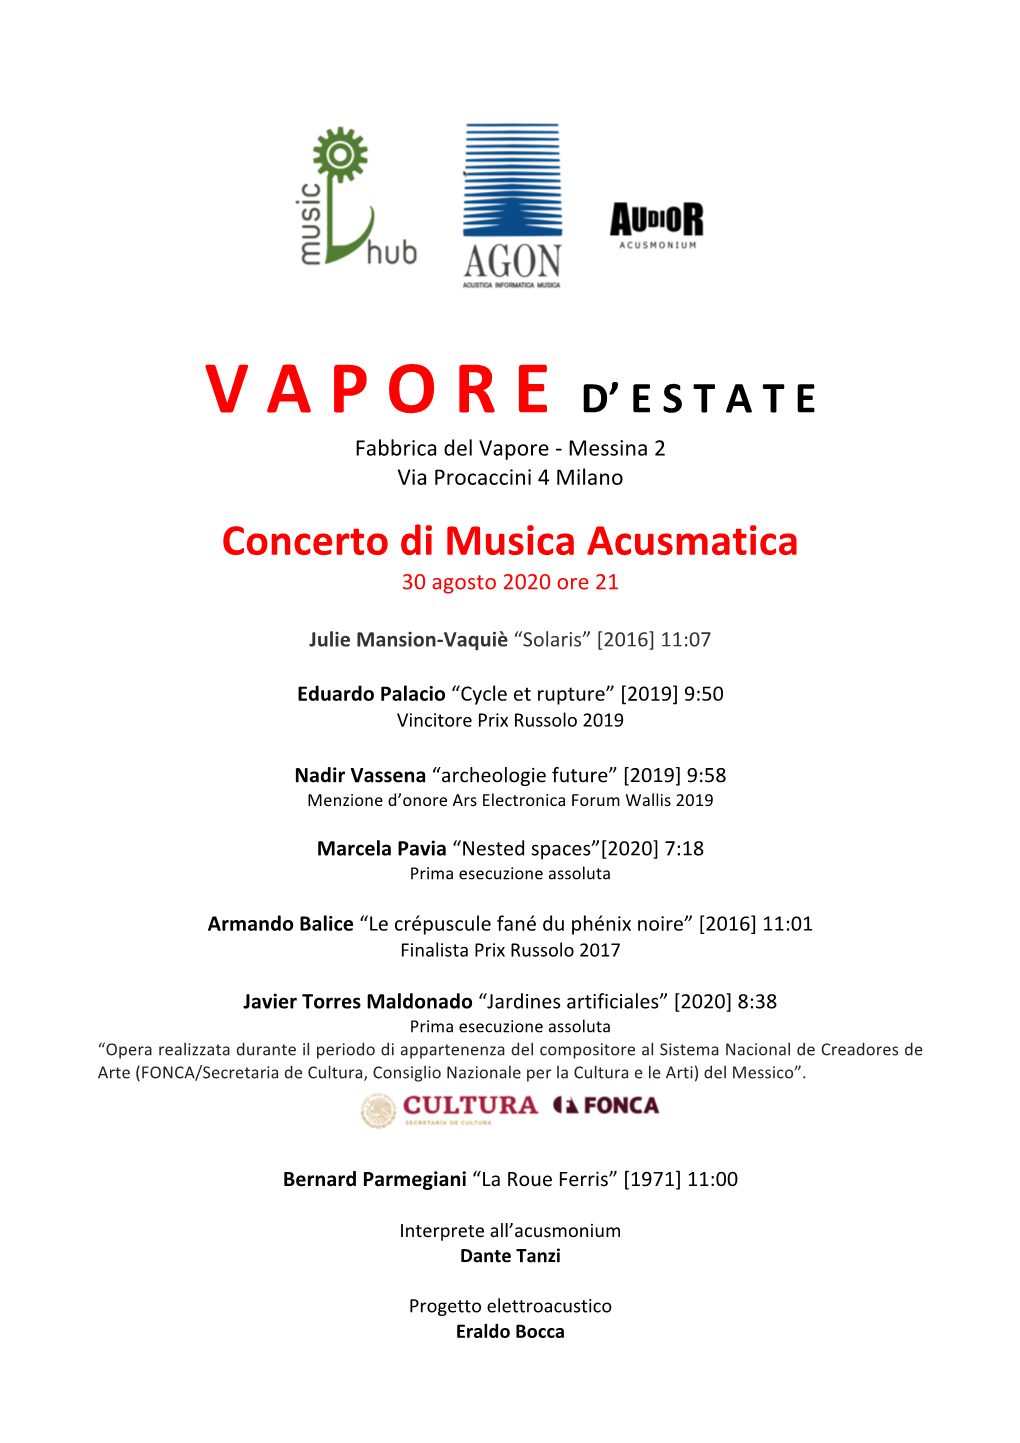 V a P O R E D' E S T a T E Concerto Di Musica Acusmatica